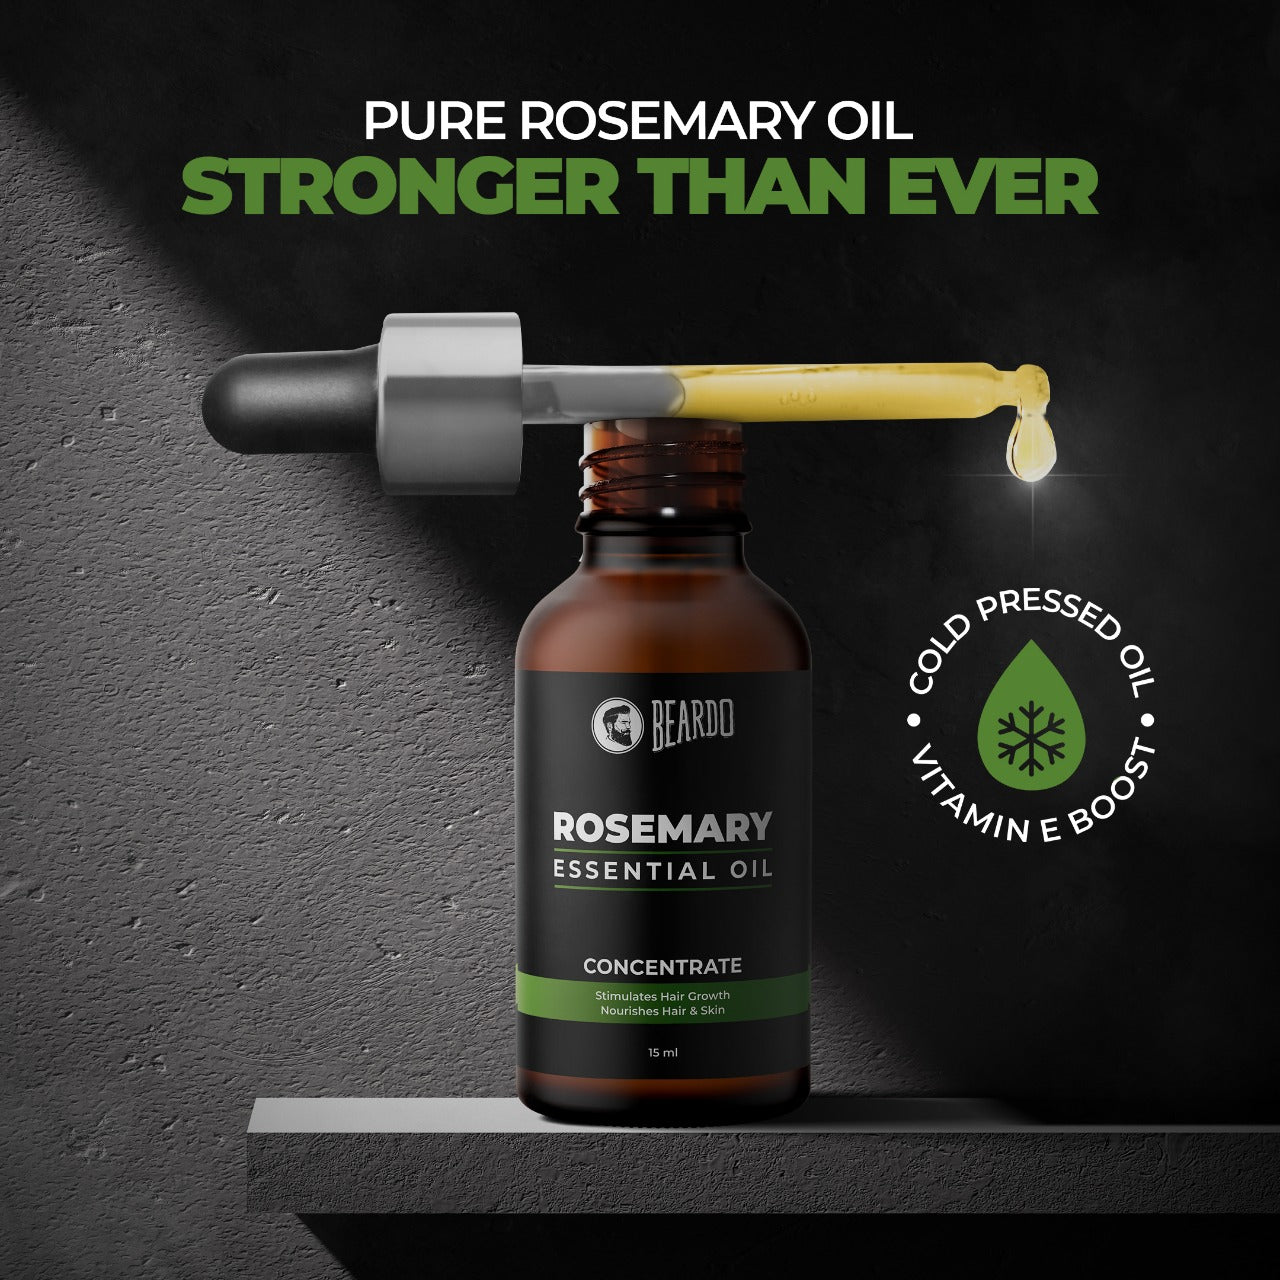 rosemary oil benefits for hair, rosemary oil, rosemary benefits for hair, rosemary oil for hair loss, rosemary oil benefits for hair